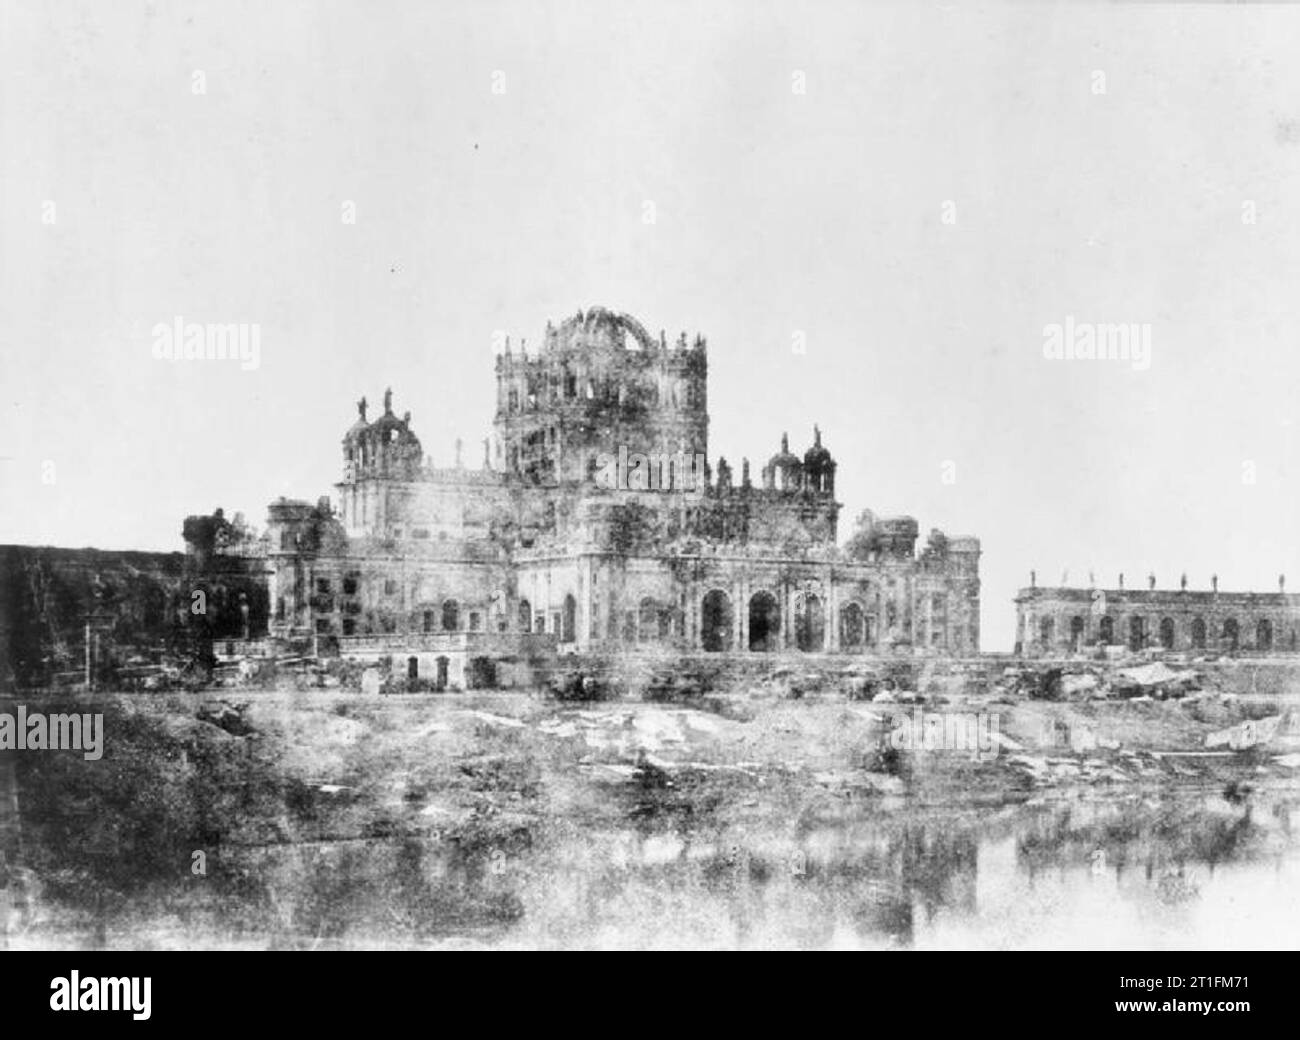 La rébellion indienne 1857-1859 Suite du siège de Lucknow. La Martinière College, le premier objectif d'être repris le 14 novembre 1857 par les forces britanniques sous le commandement de sir Colin Campbell pendant le soulagement de Lucknow. Banque D'Images